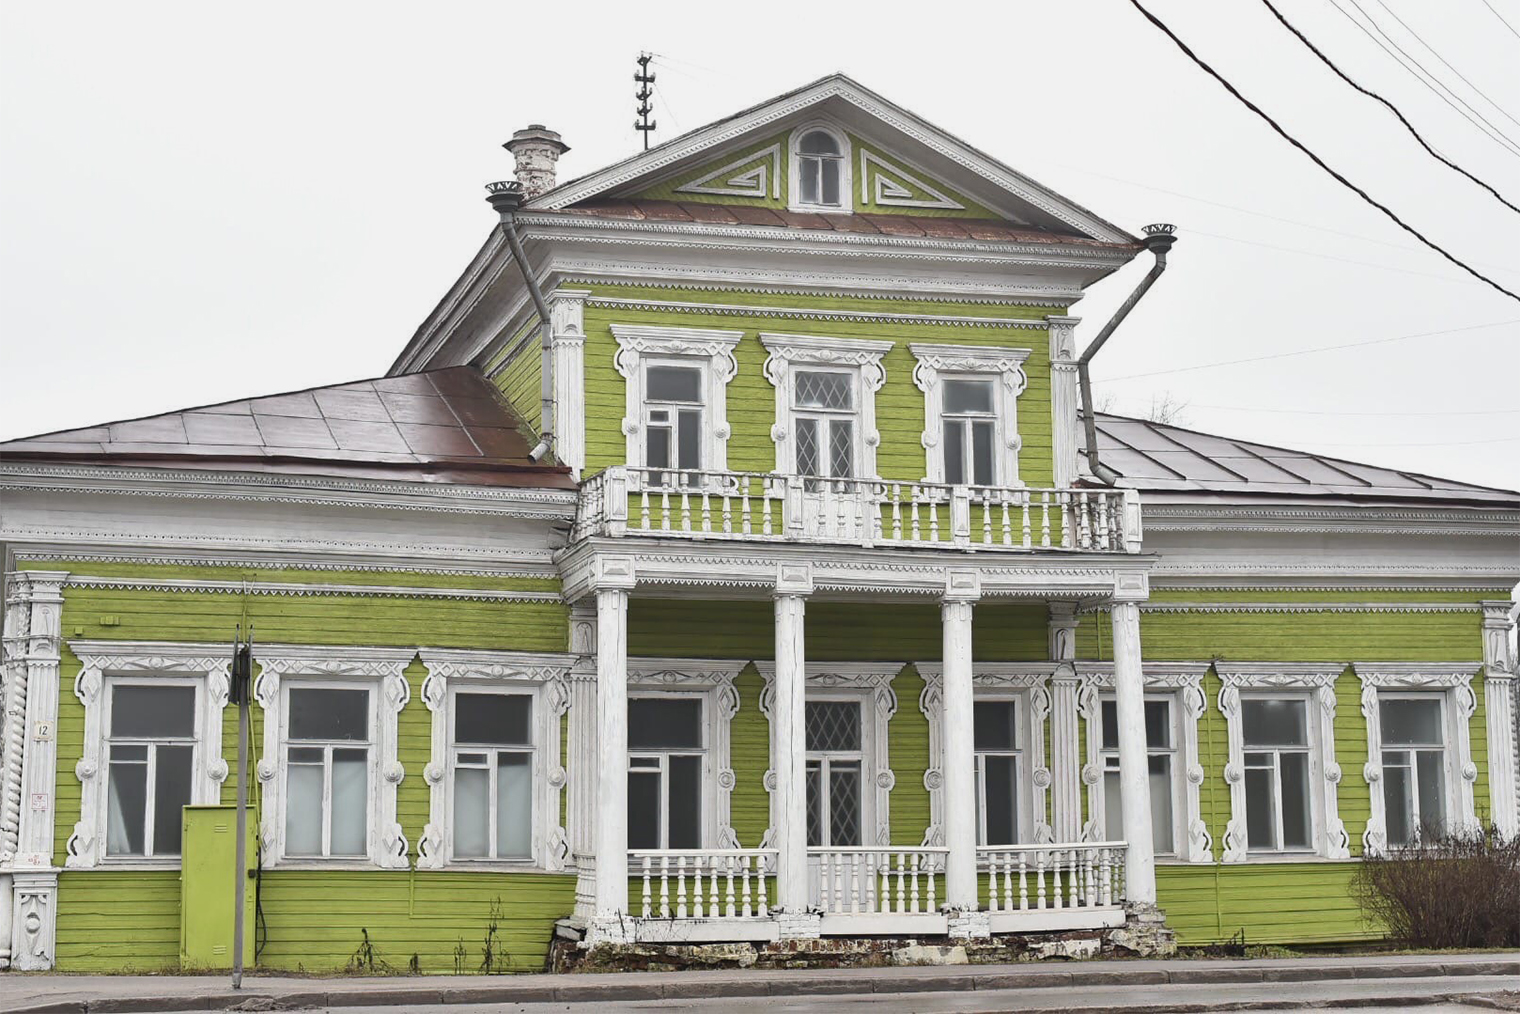 Возраст сруба дома Засецких — более 250 лет. Так он выглядел до реставрации